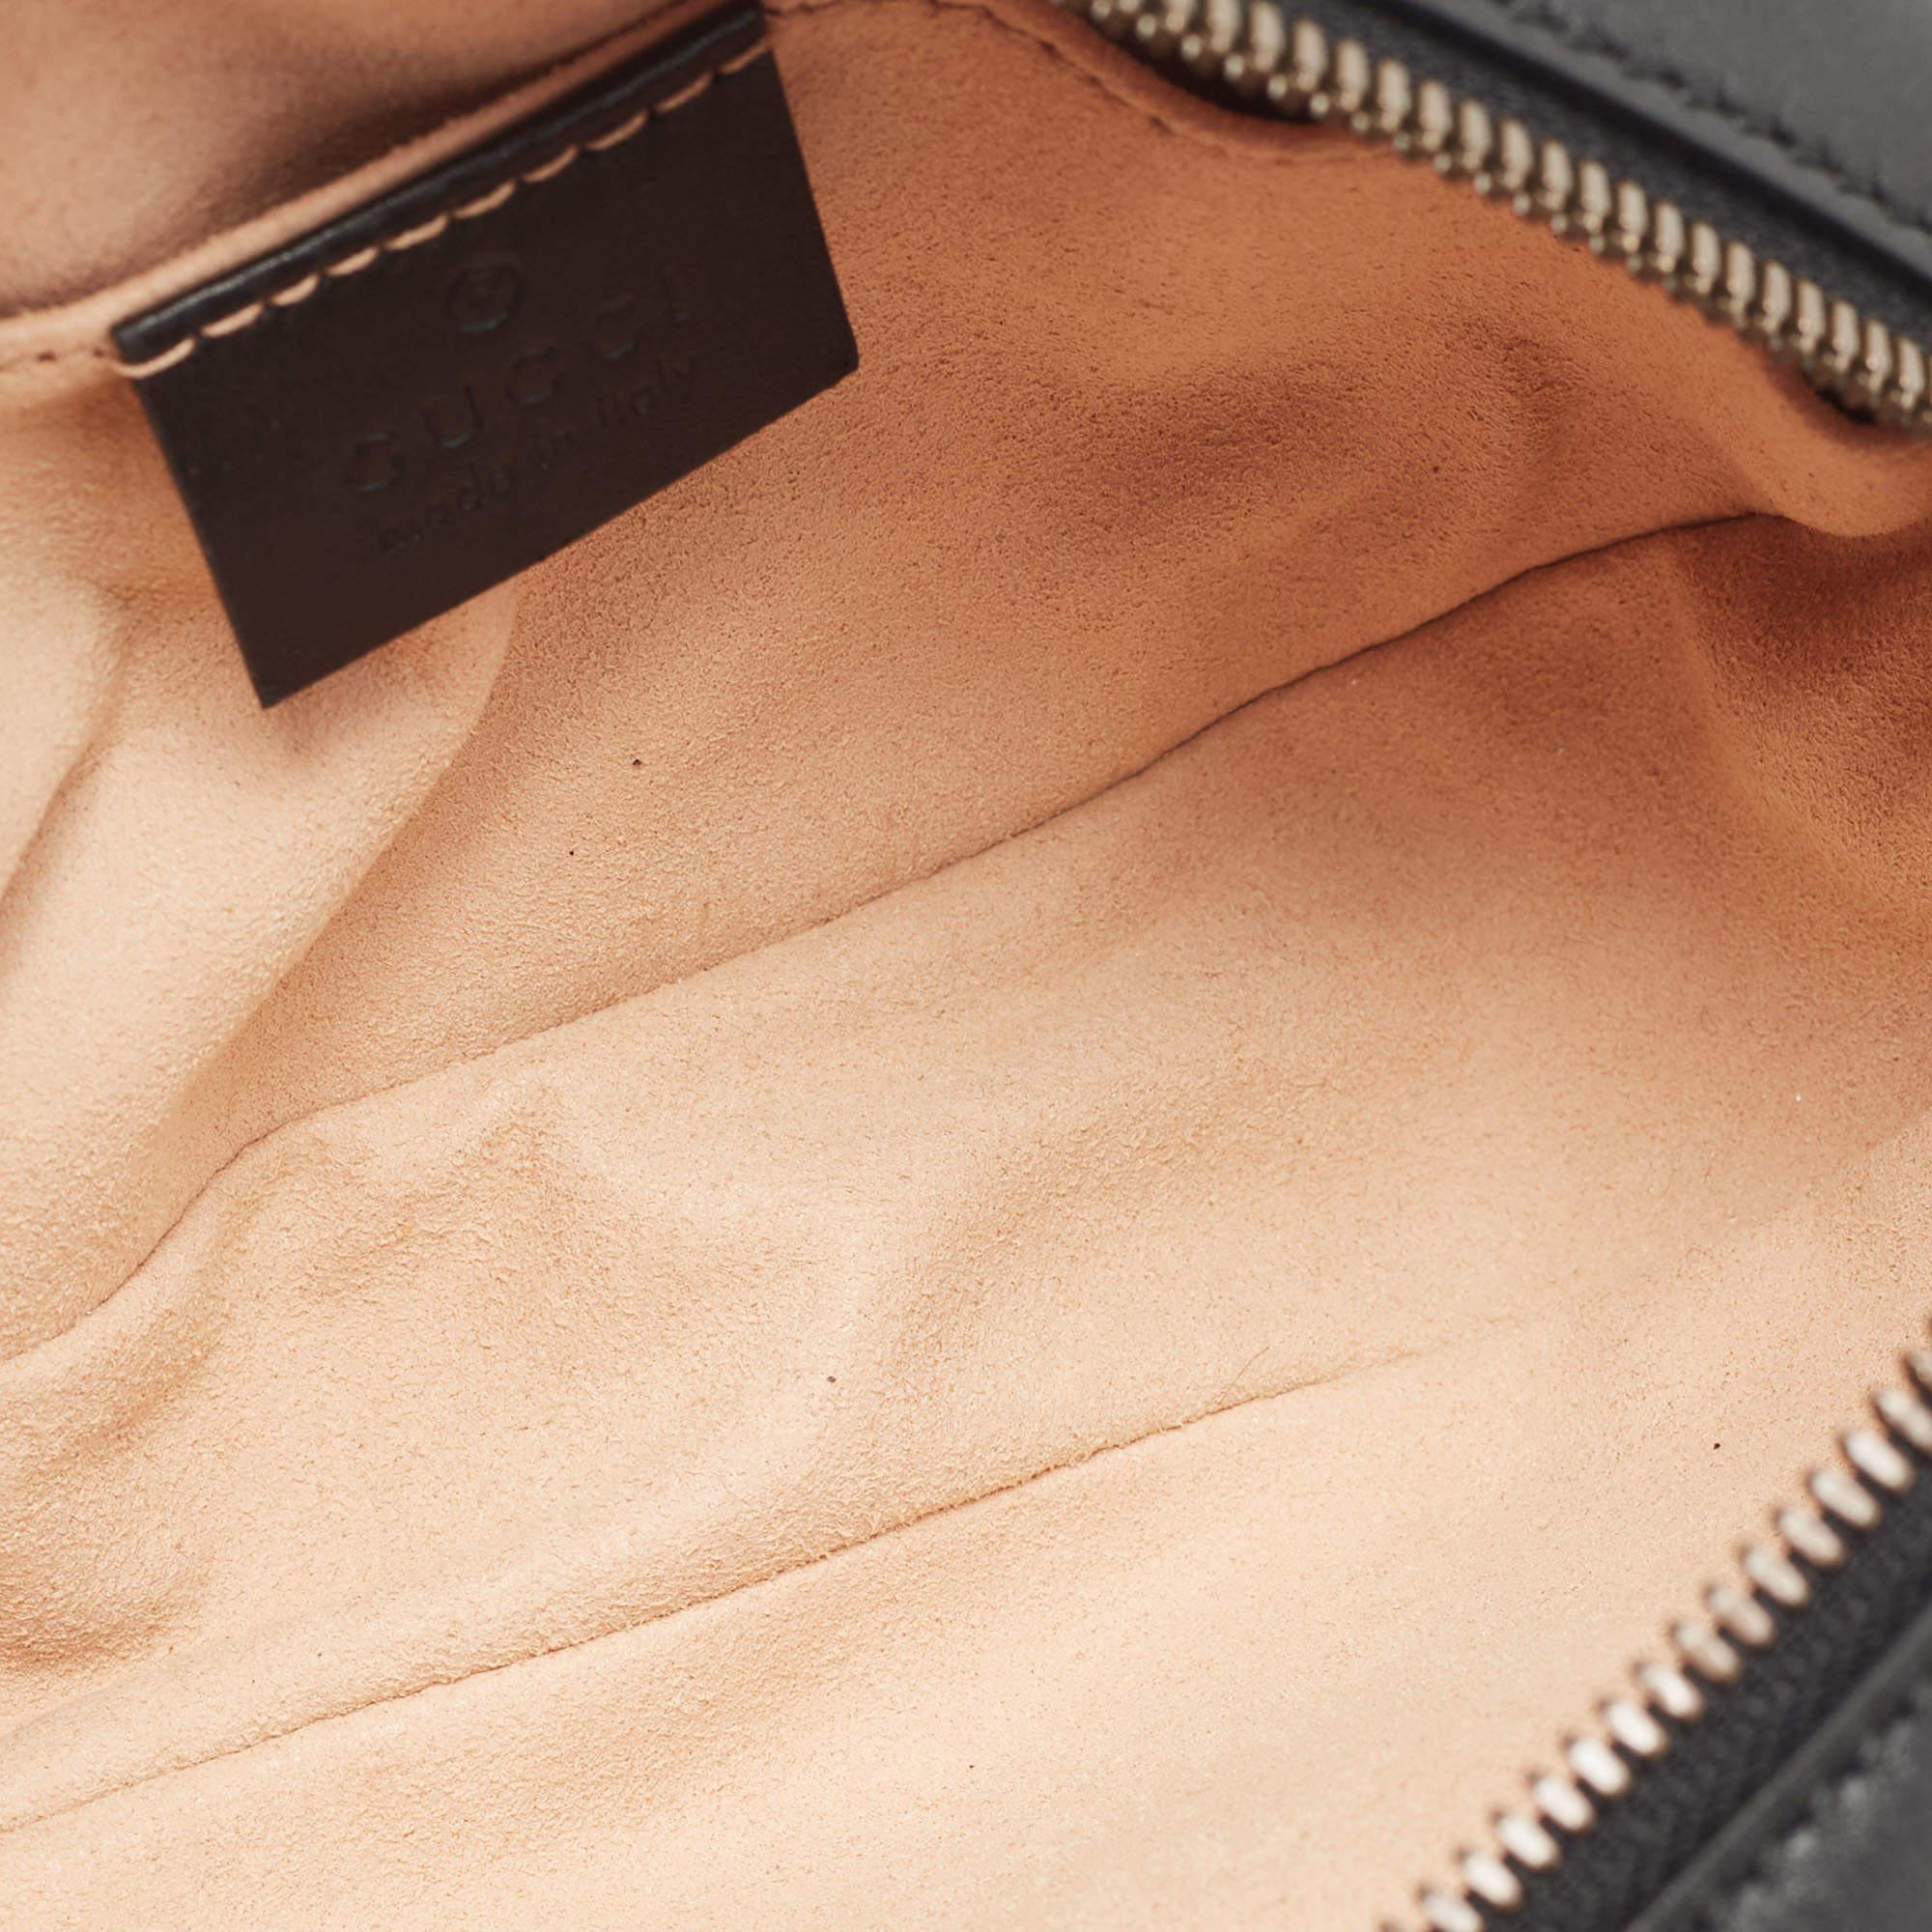 Gucci Black Matelassé Leather GG Marmont Belt Bag 5